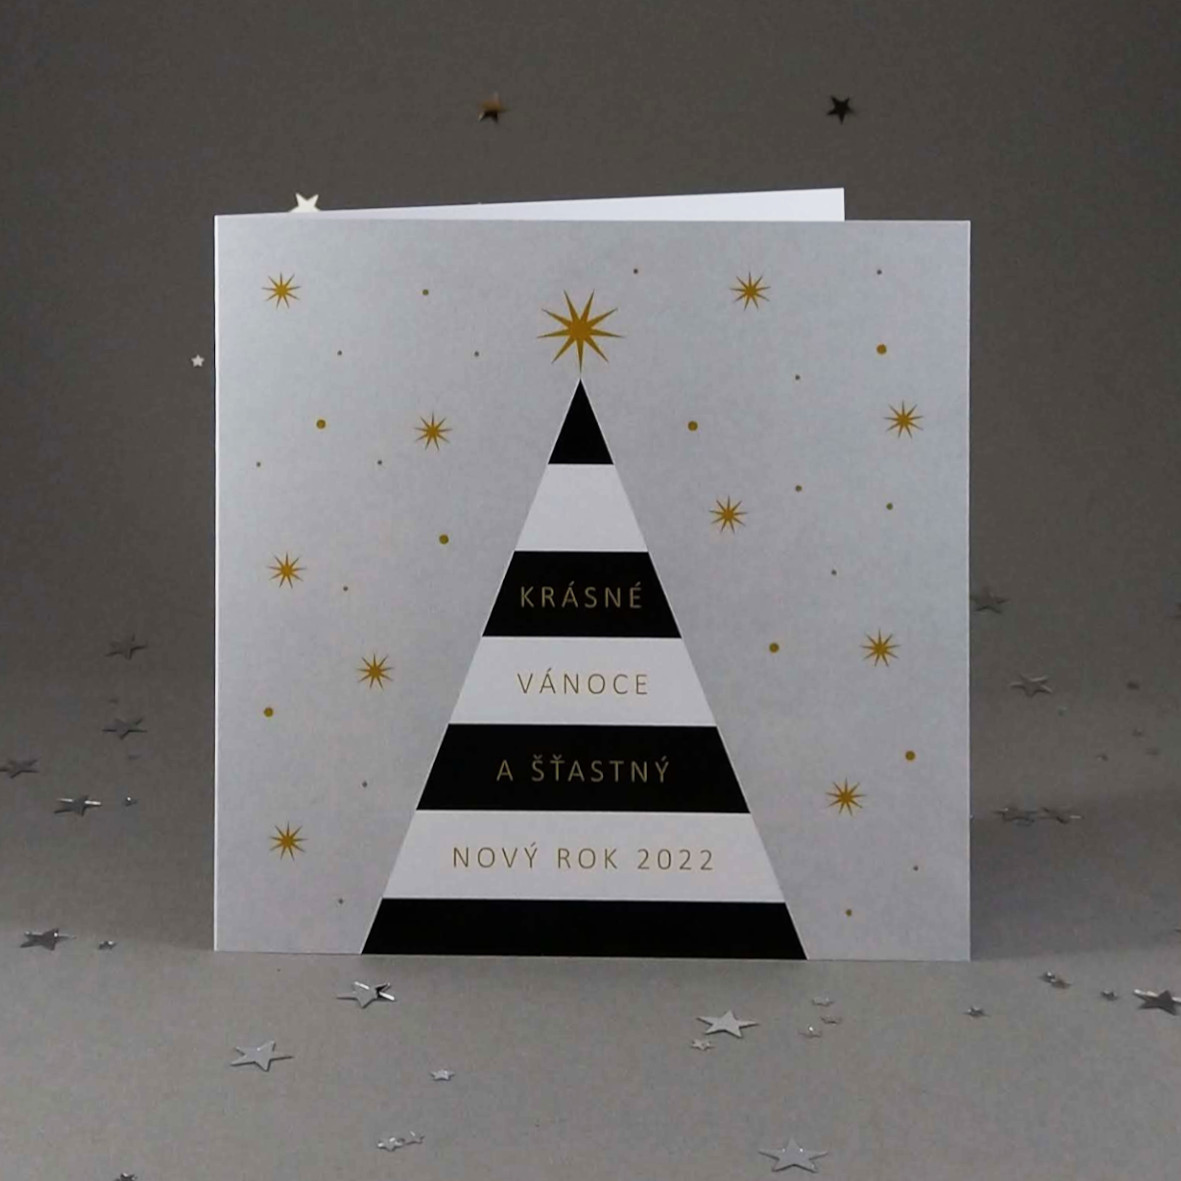 Novoroční–vánoční přání s motivem černo-bílého vánočního stromu. Otevírací, čtvercový formát 140 × 140 mm, digitální tisk, jasně bílý hlazený papír.